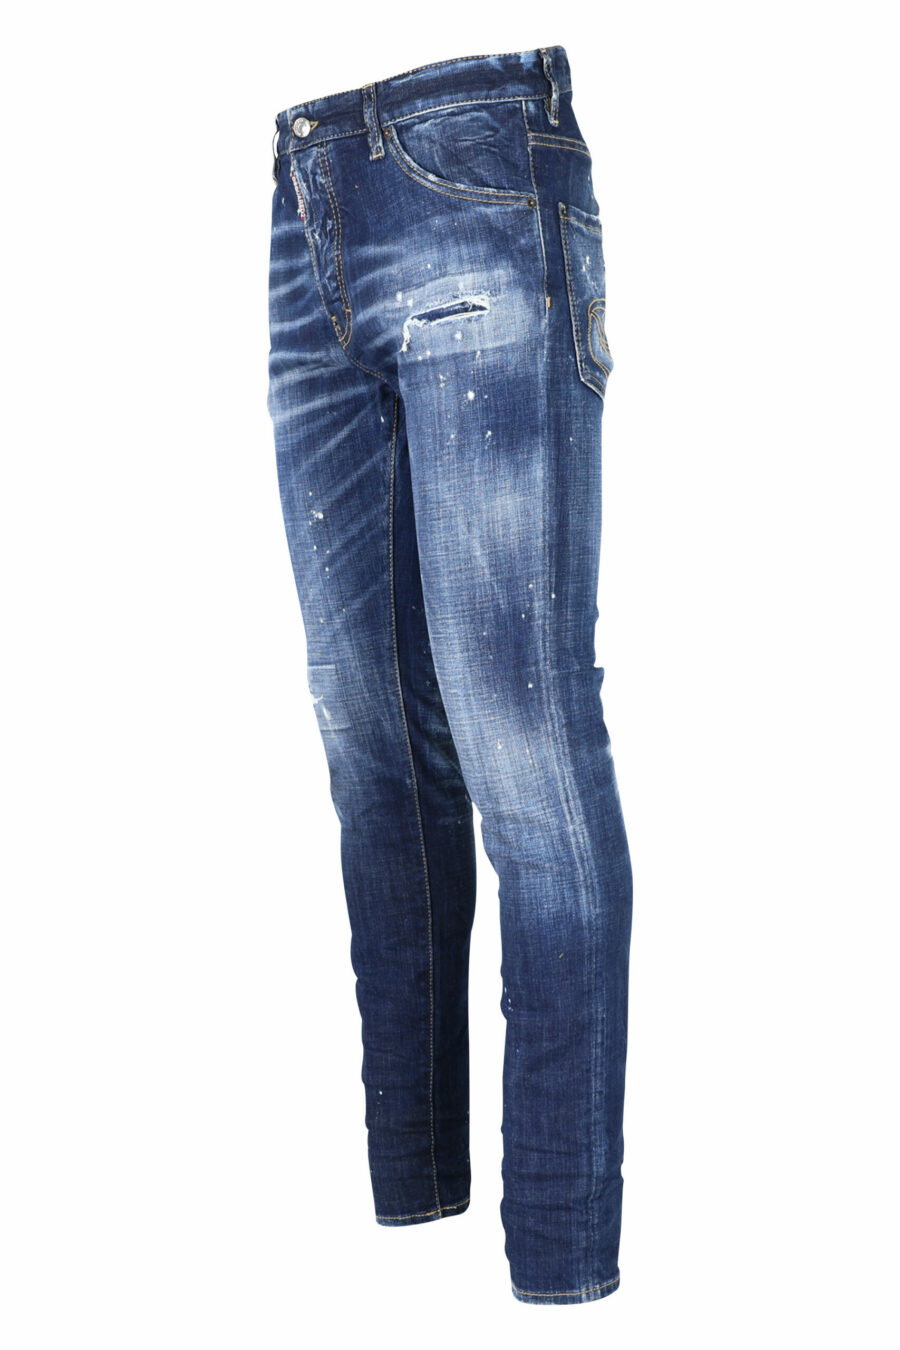 Pantalón vaquero "cool guy jean" azul con pintura y desgastado - 8054148101688 1 scaled